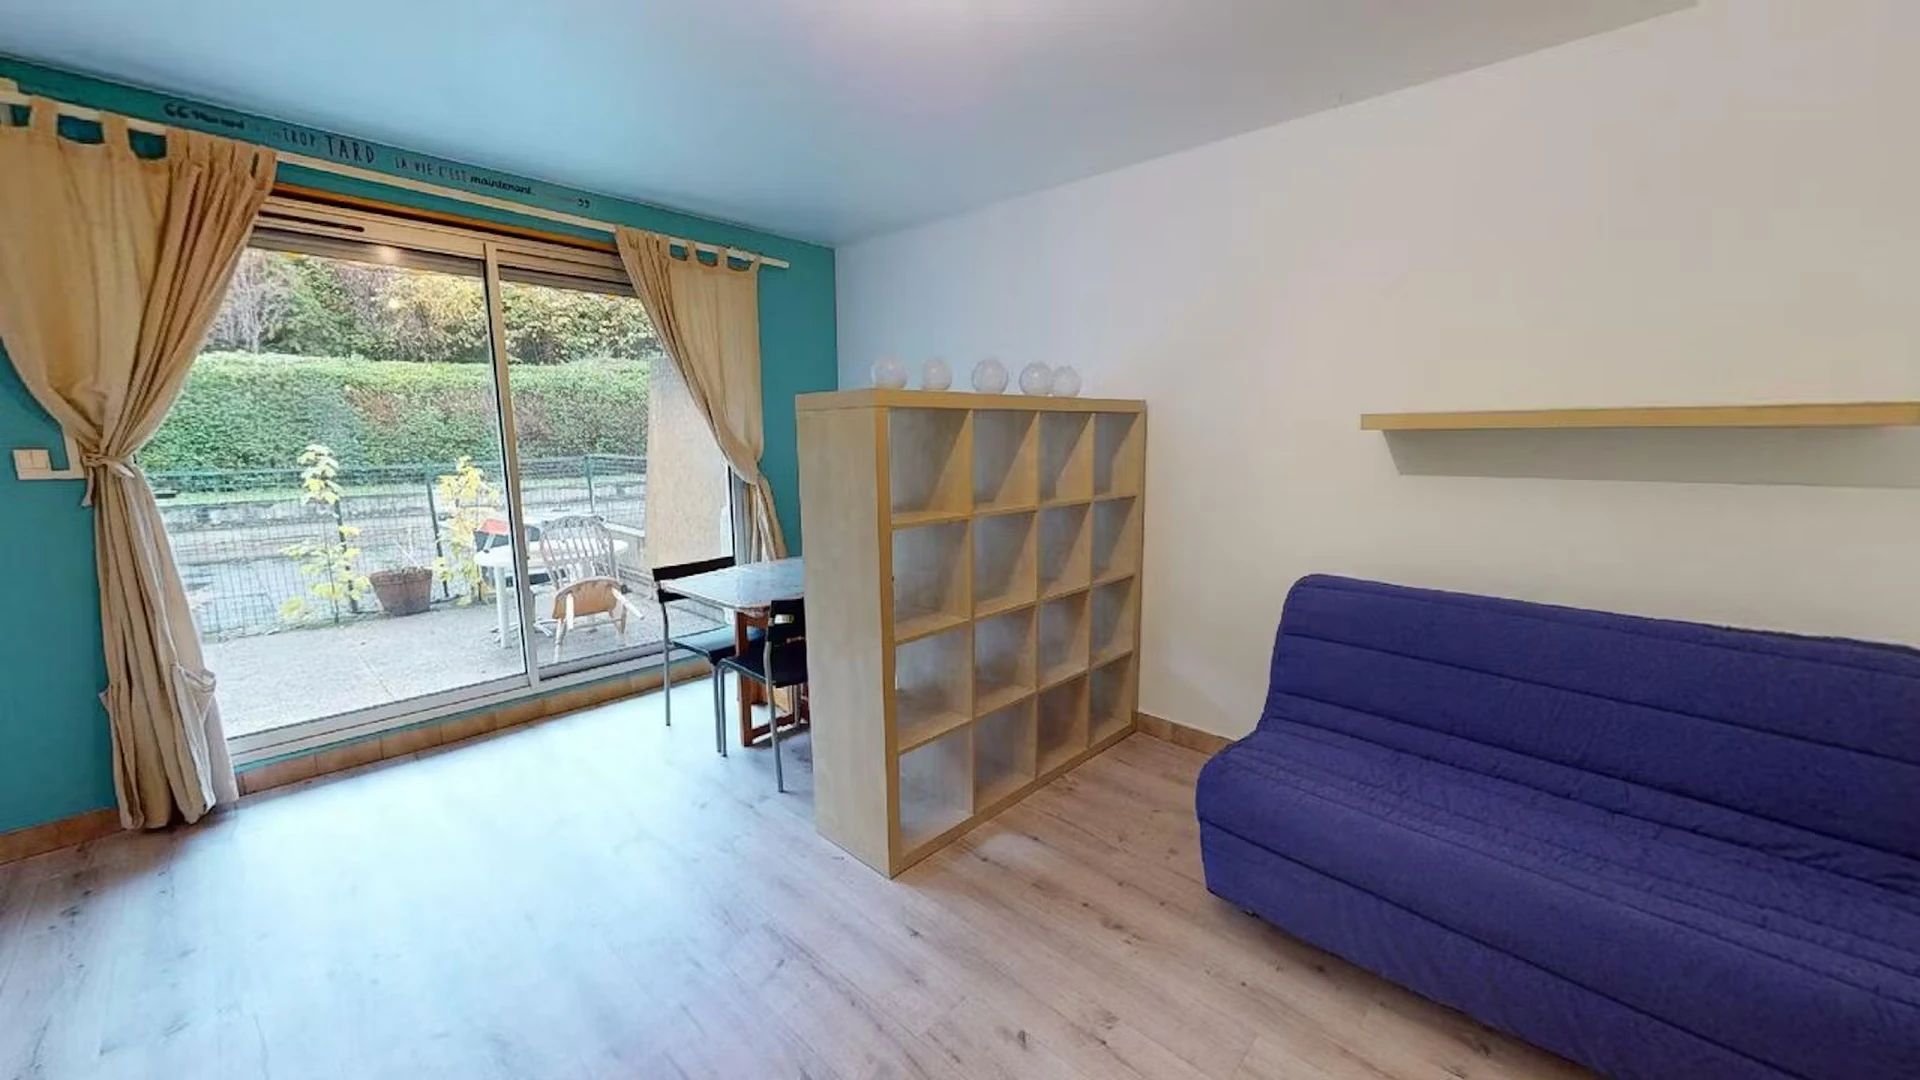 Apartamento moderno e brilhante em Saint-étienne